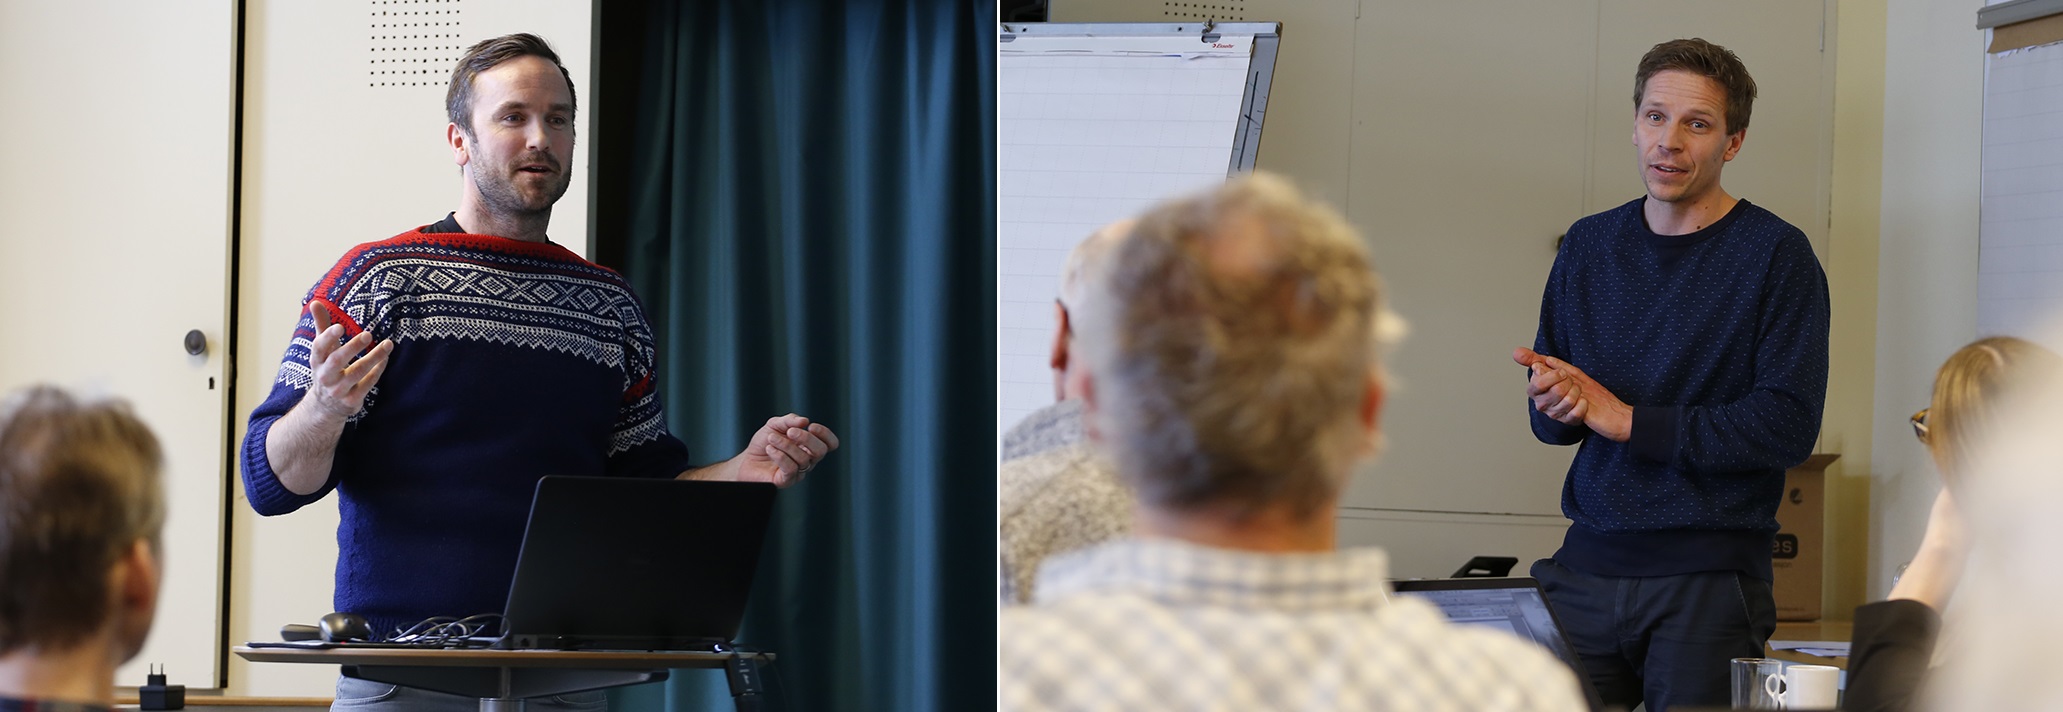 Erlend Gjelsvik og Morten Aas fra Oppdal fylkeskommune presenterte prosjektet "Villreinfjellet Rondane som verdiskaper". Foto: Anders Mossing